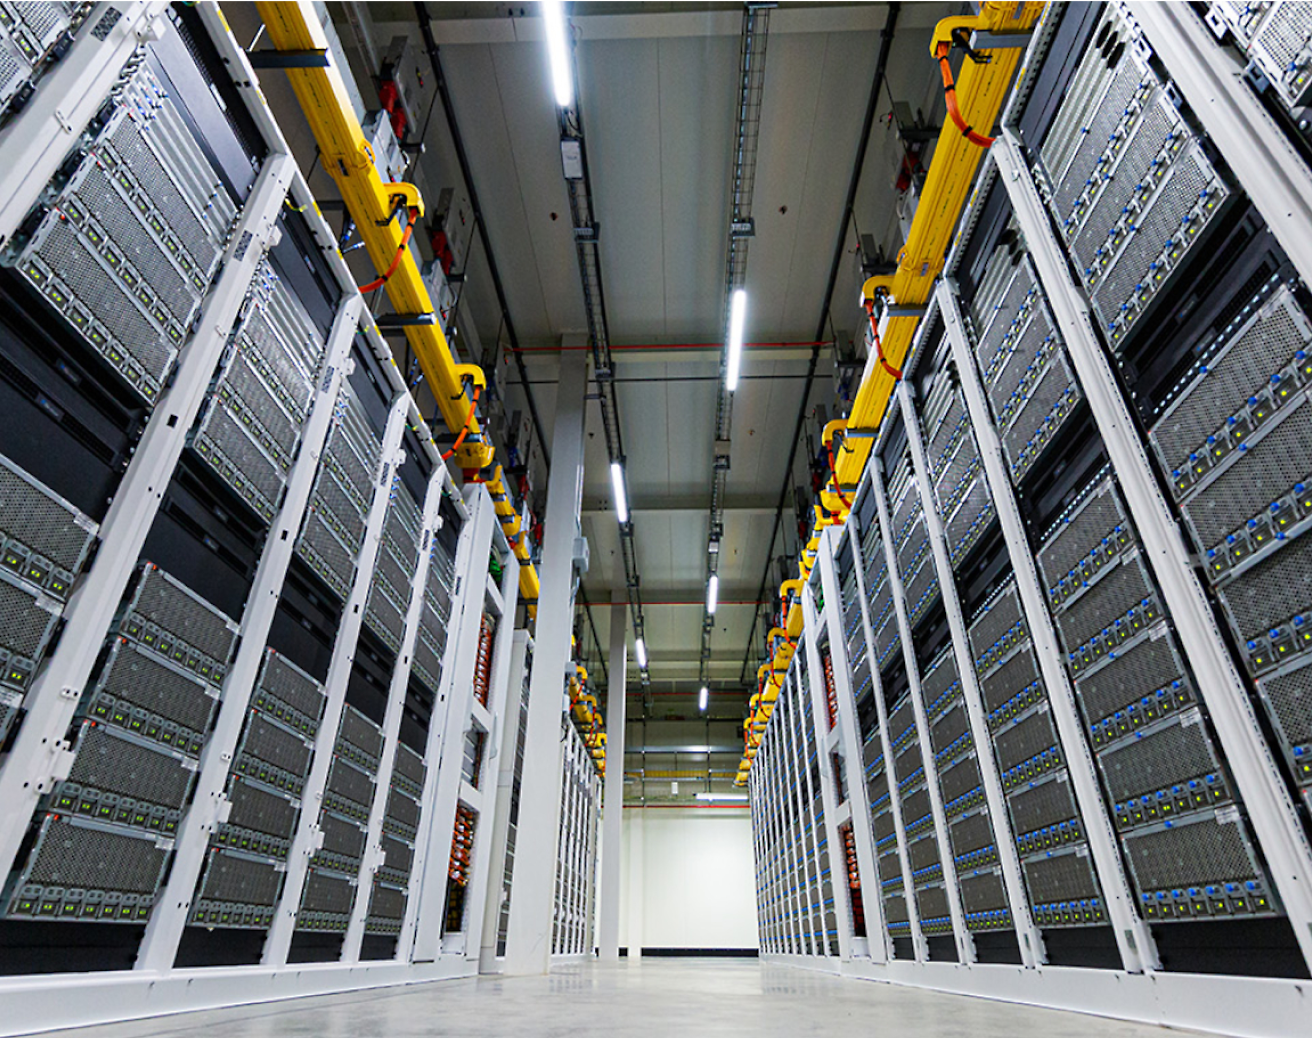 資料中心內一排排高大的現代伺服器機架之間的走道，頭頂上有電纜橋架。